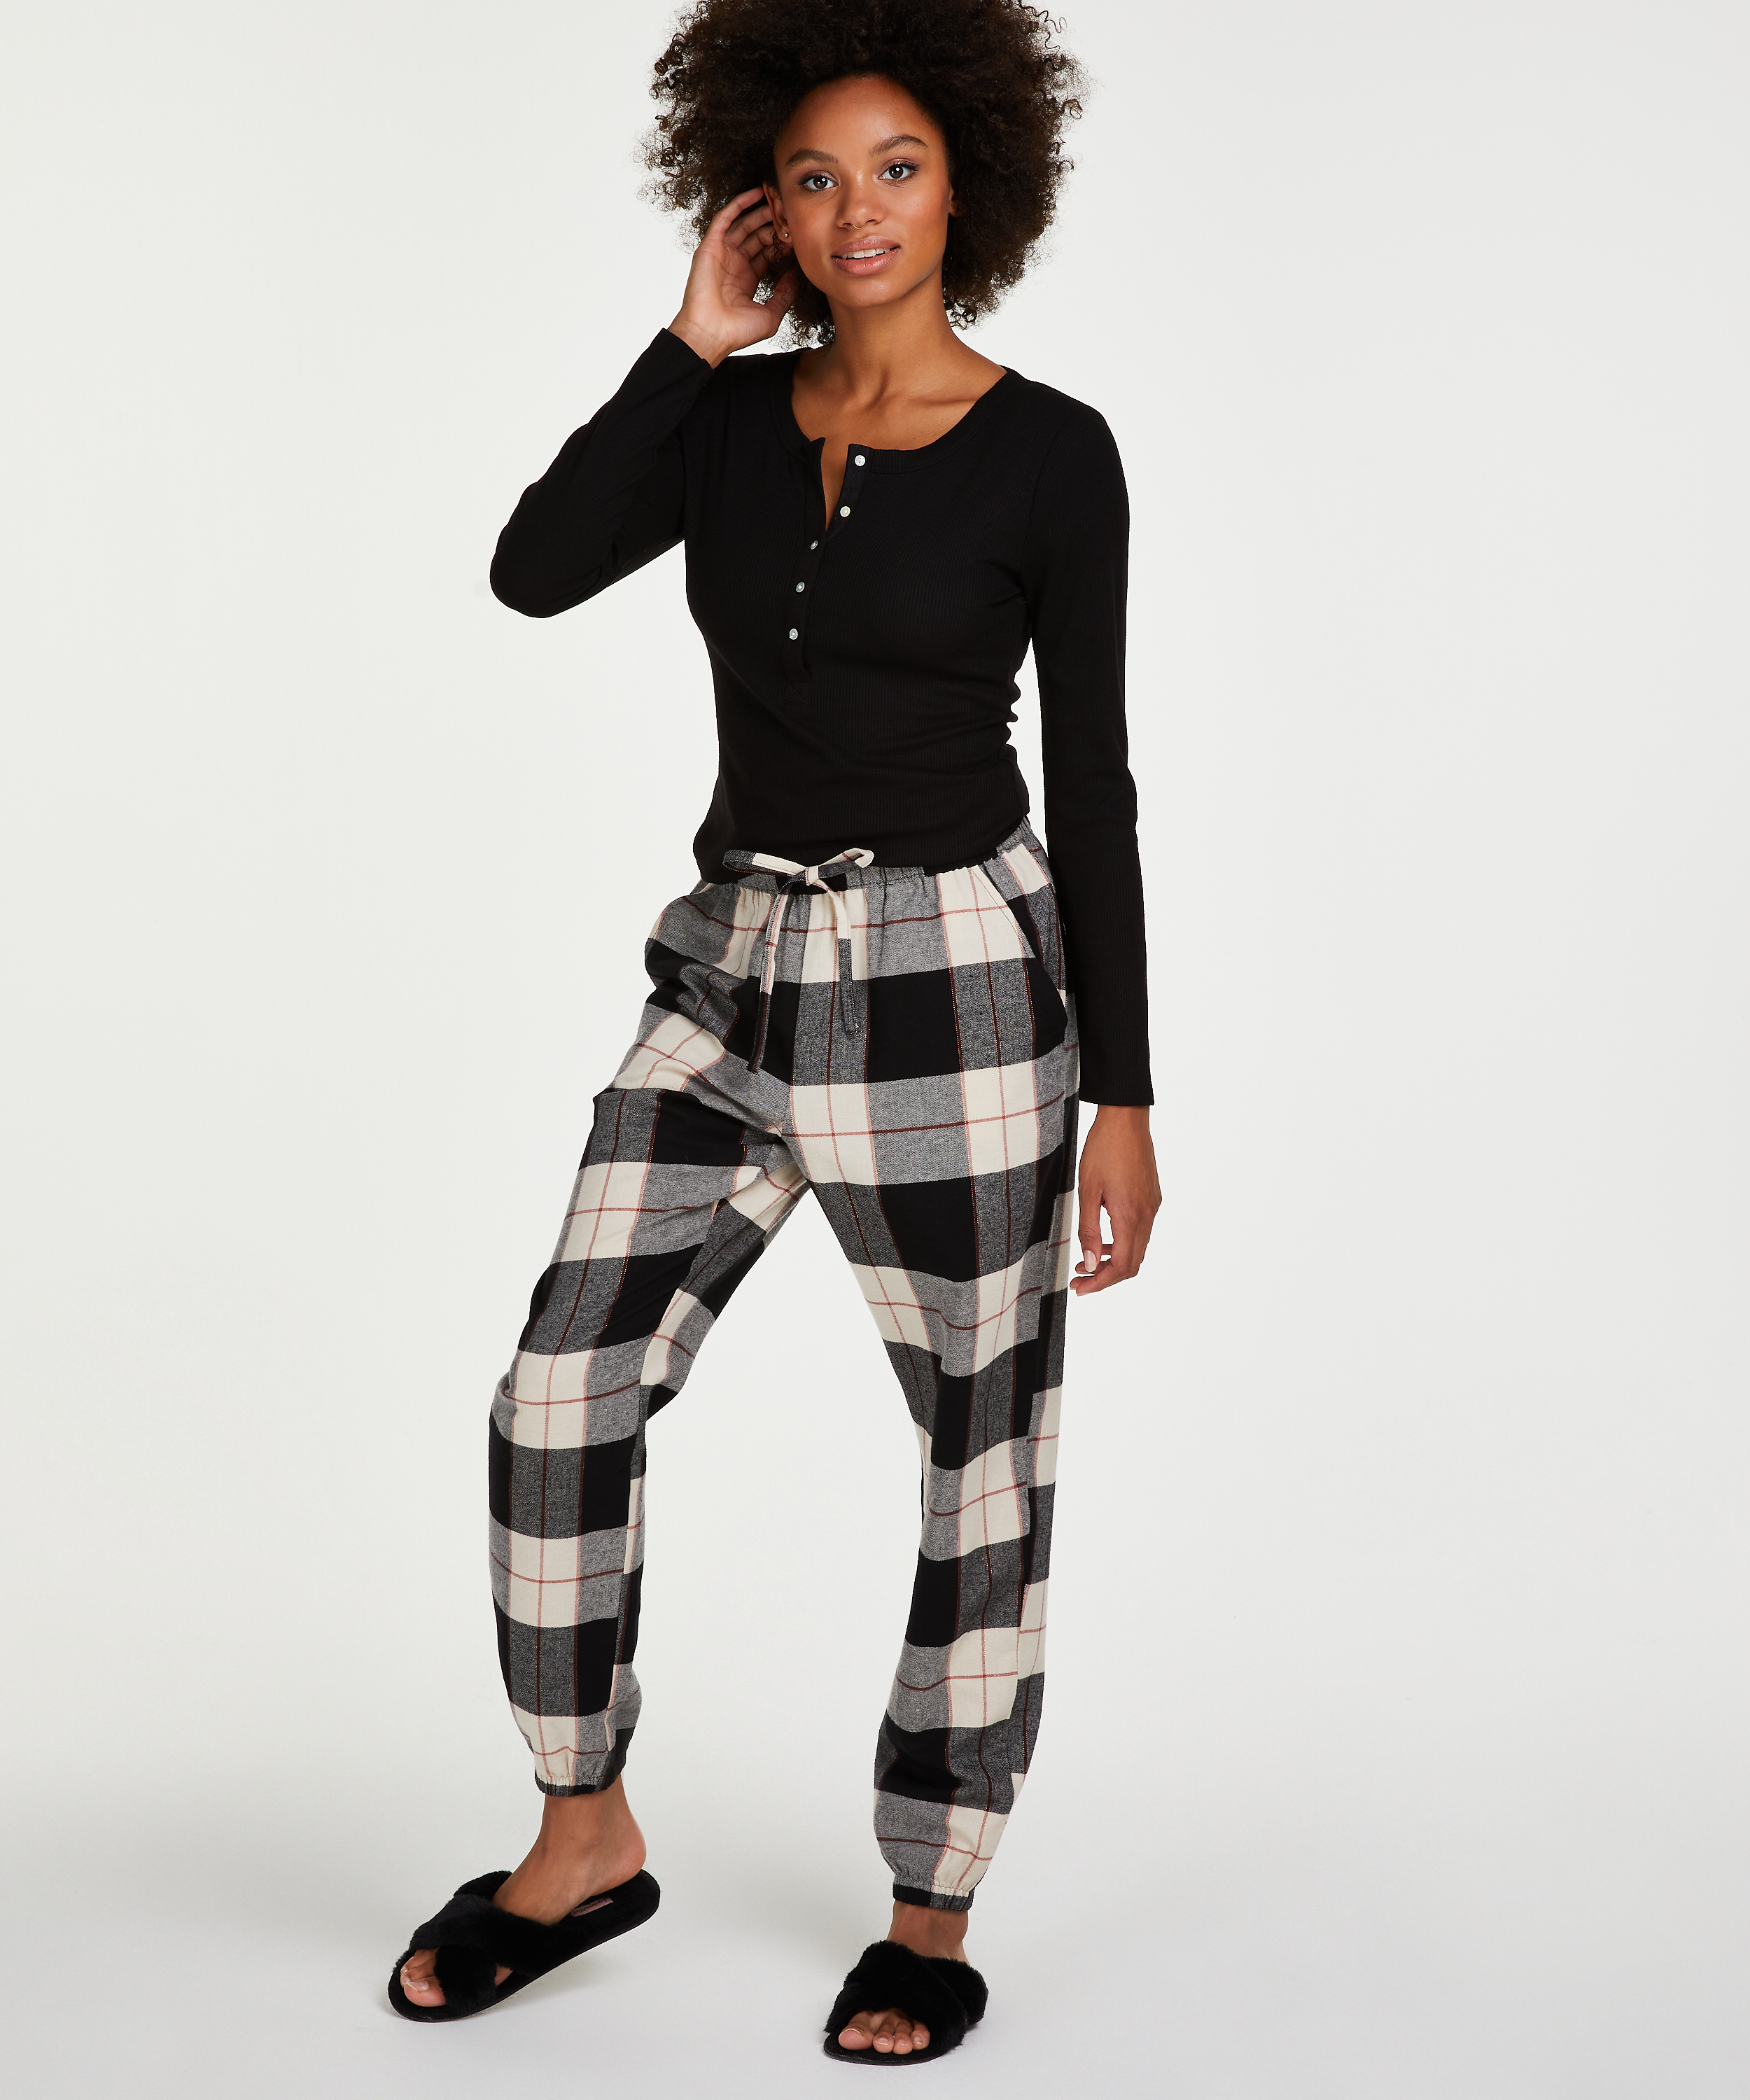 Twill Pajama Pants - Black/plaid - Ladies